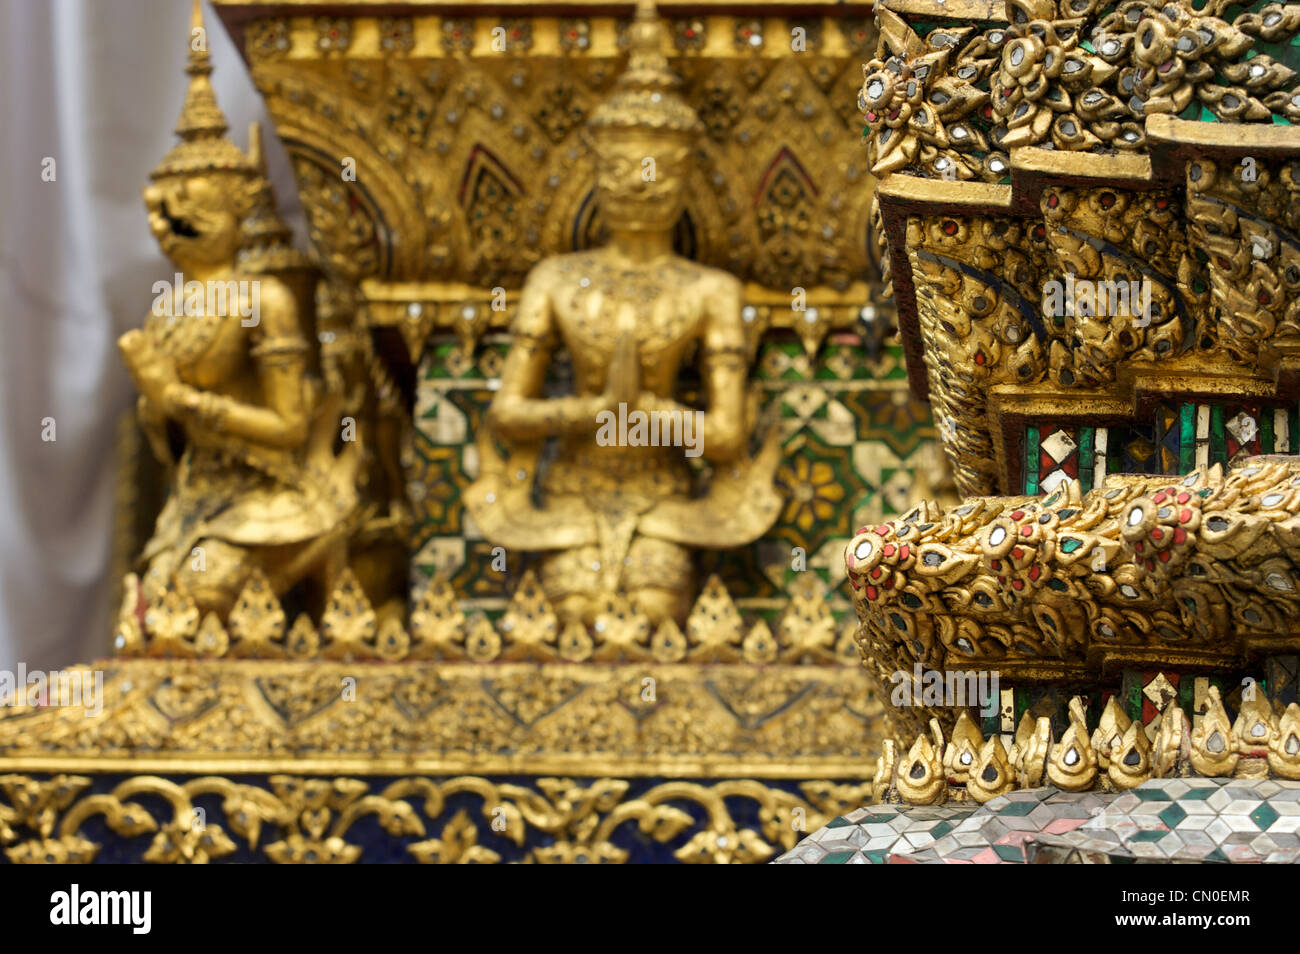 Specchi,mosaici,piastrelle dipinte,decorazioni,Grand Palace,wat pra keaw,Thai,il buddismo religione,,Bangkok, Tailandia Foto Stock